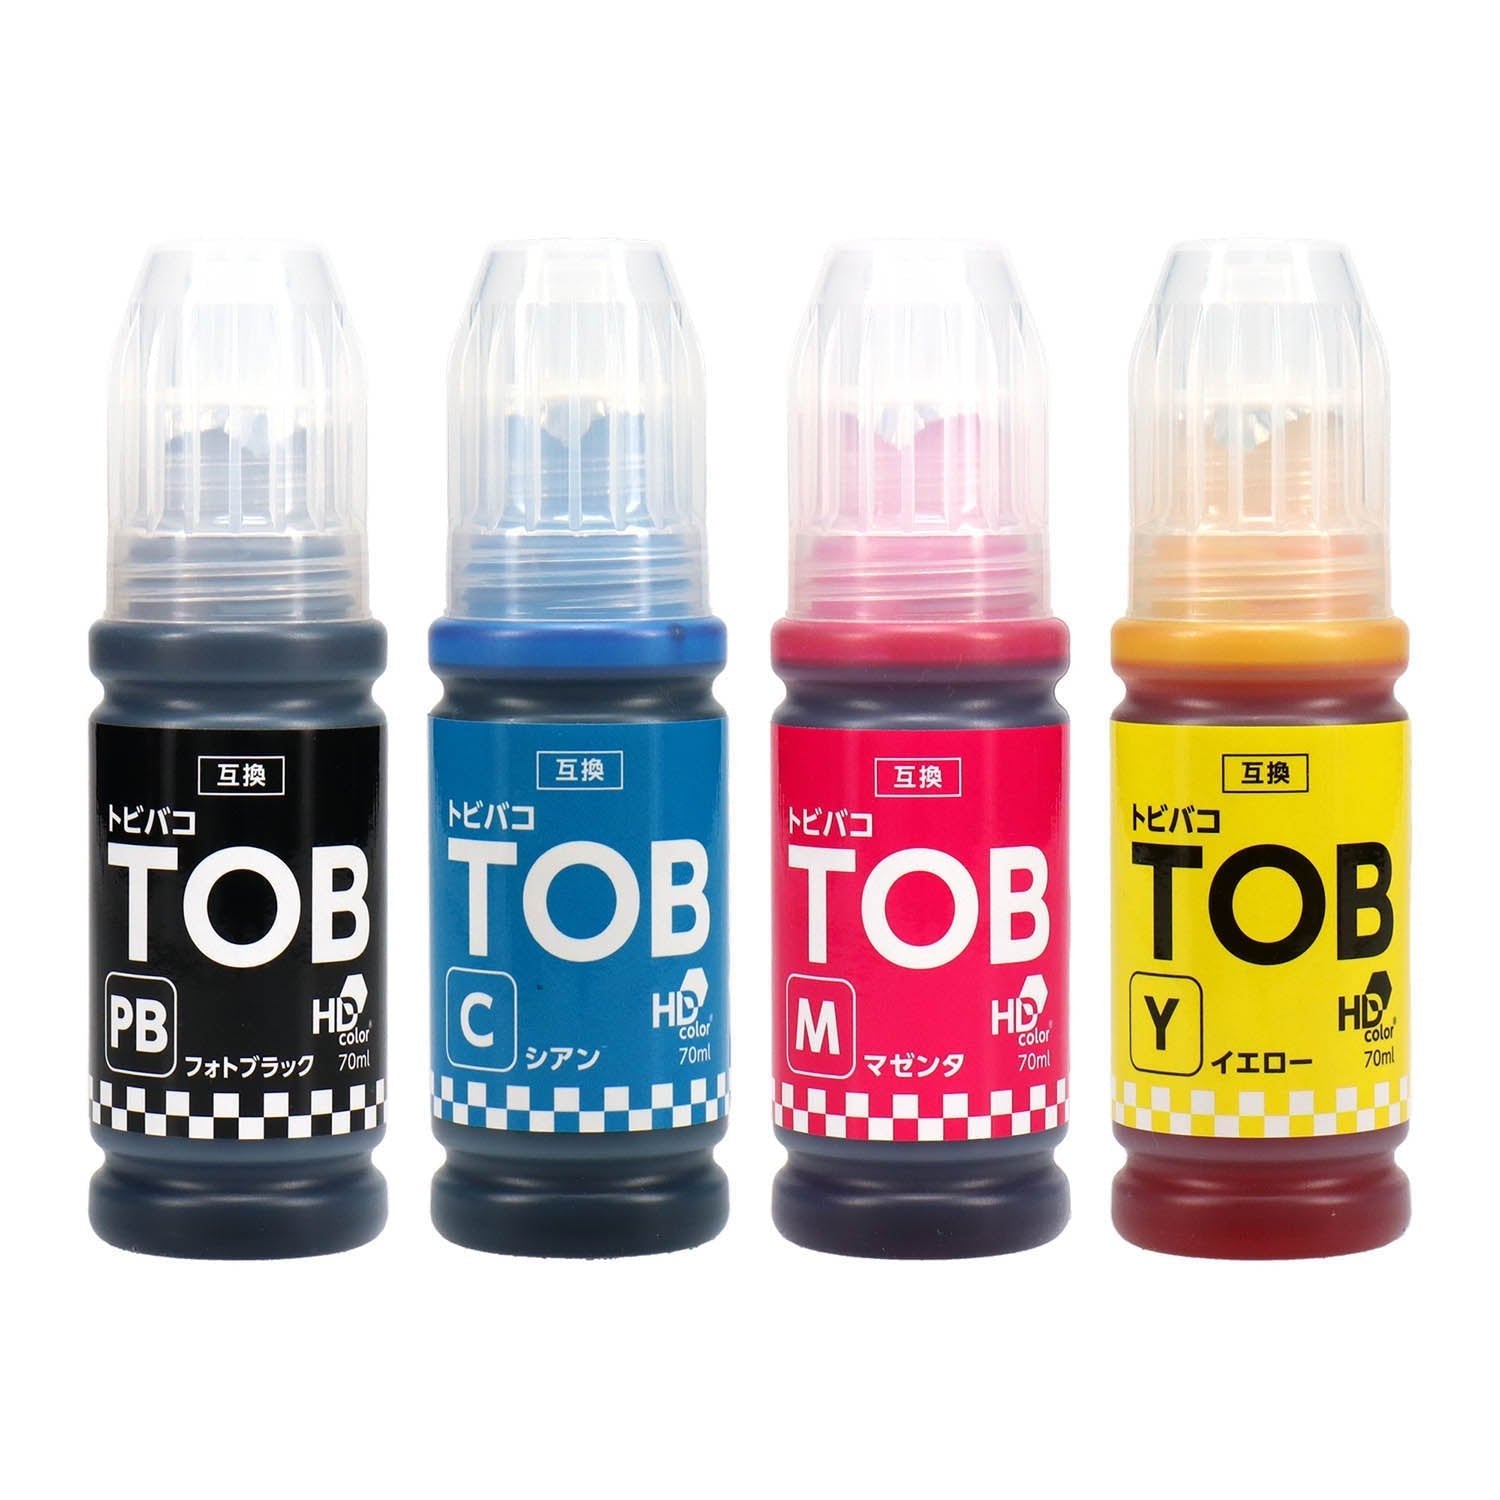 エプソン用 TOB (トビバコ) 互換インクボトル 染料 5色セット